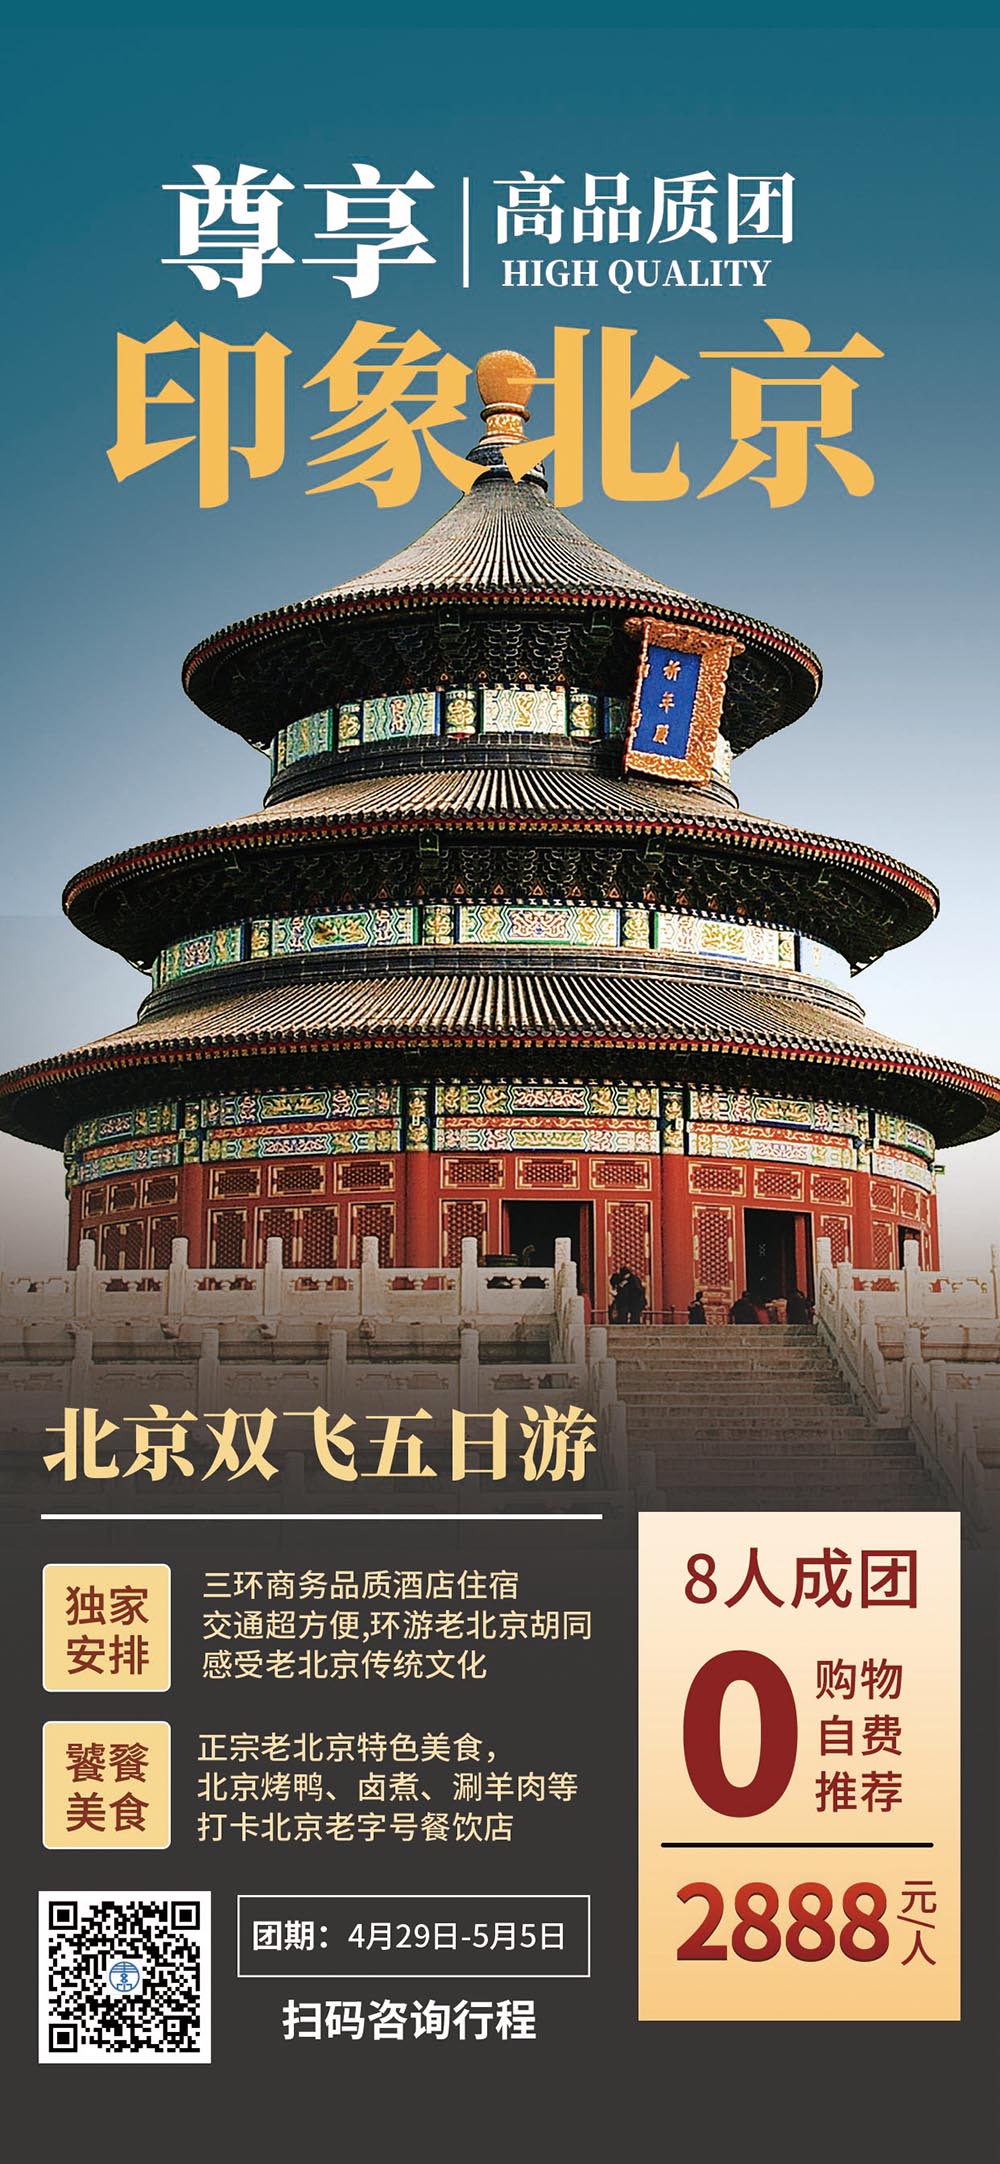 简约五一劳动节北京旅游促销宣传海报